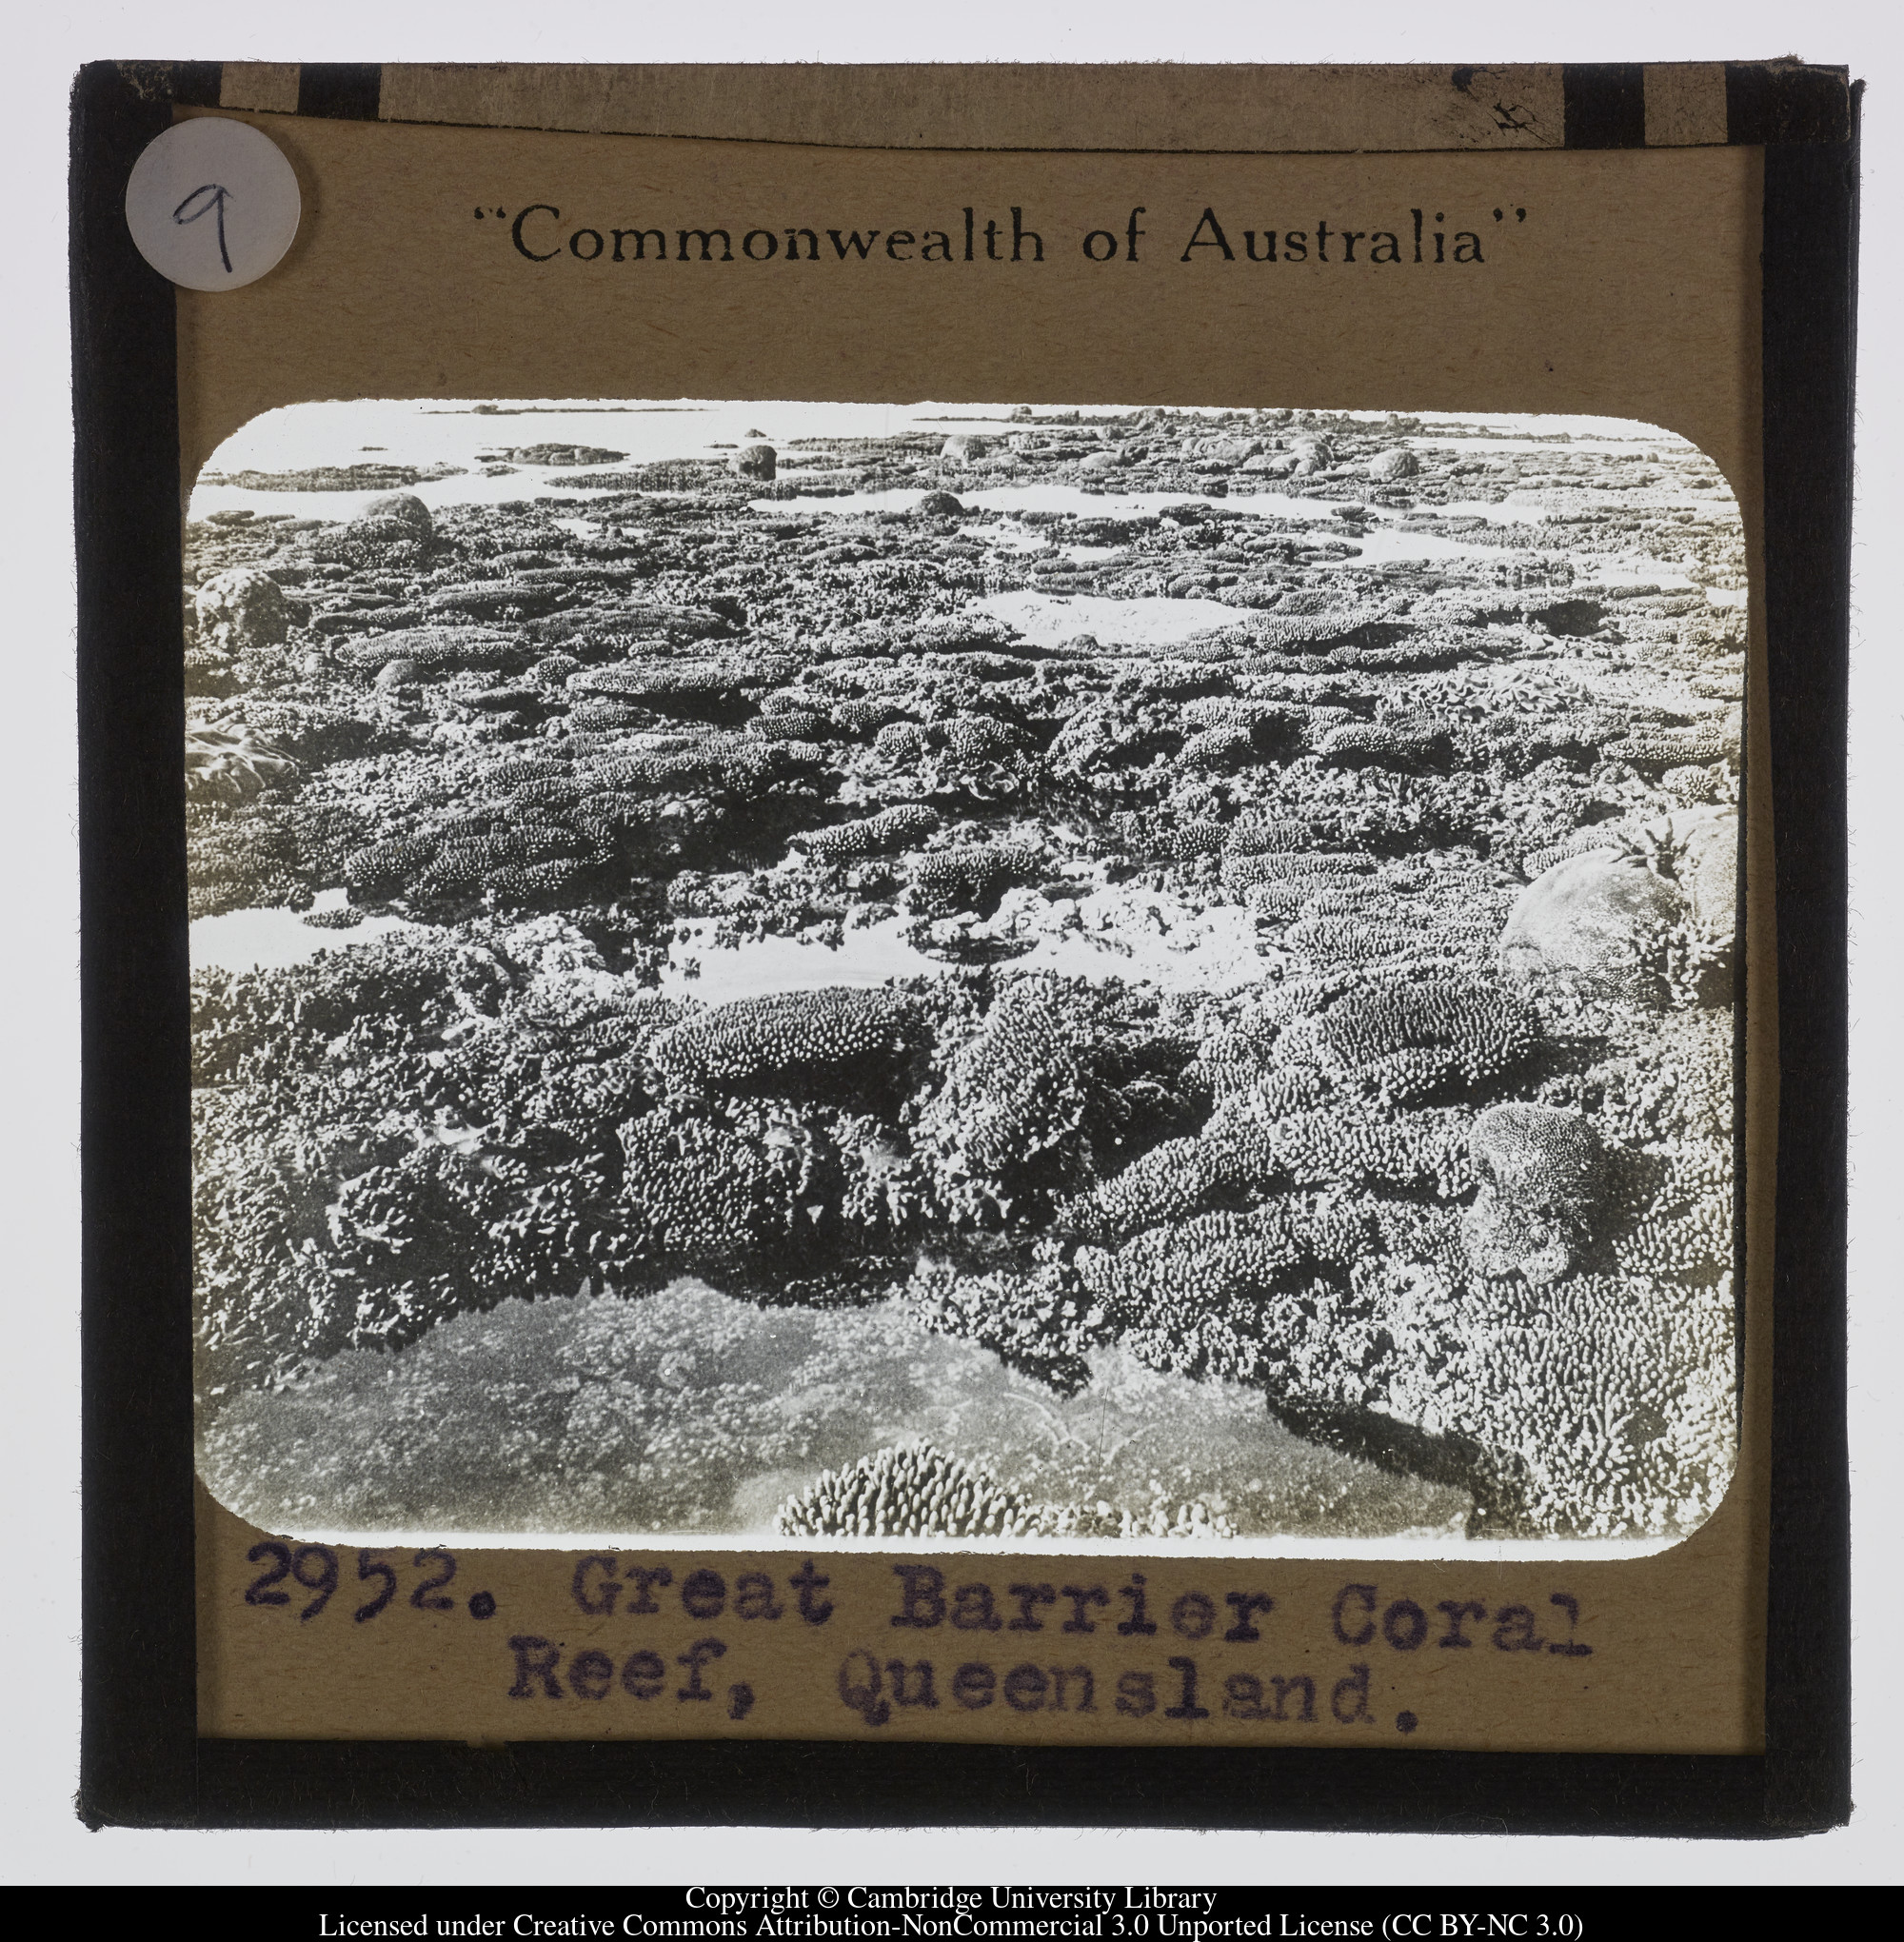 Great Barrier Reef, Queensland, 1900 - 1940